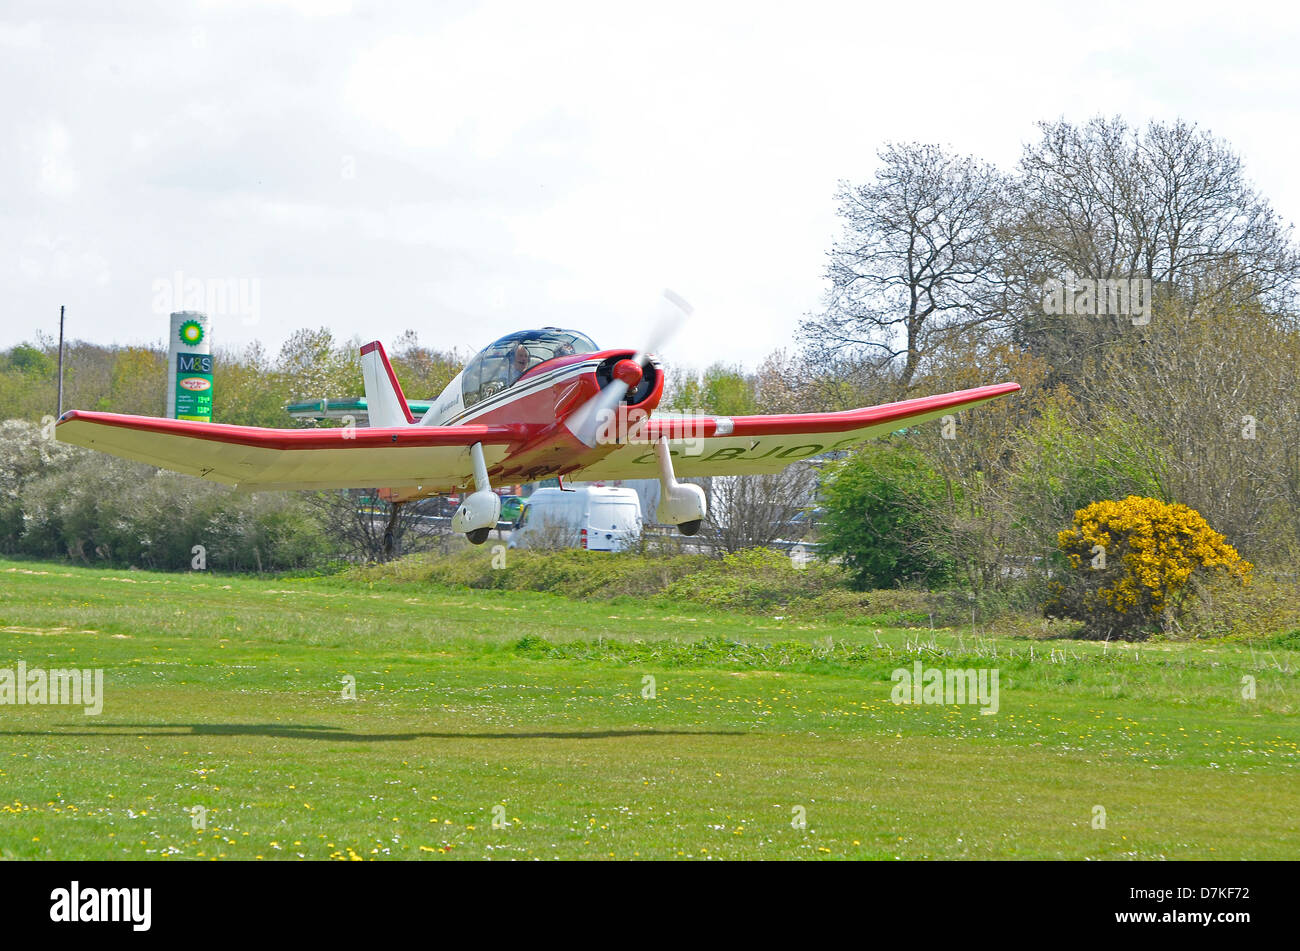 Jodel D150 aviones ligeros que acaba de quitar de una pista de aterrizaje de hierba. Foto de stock